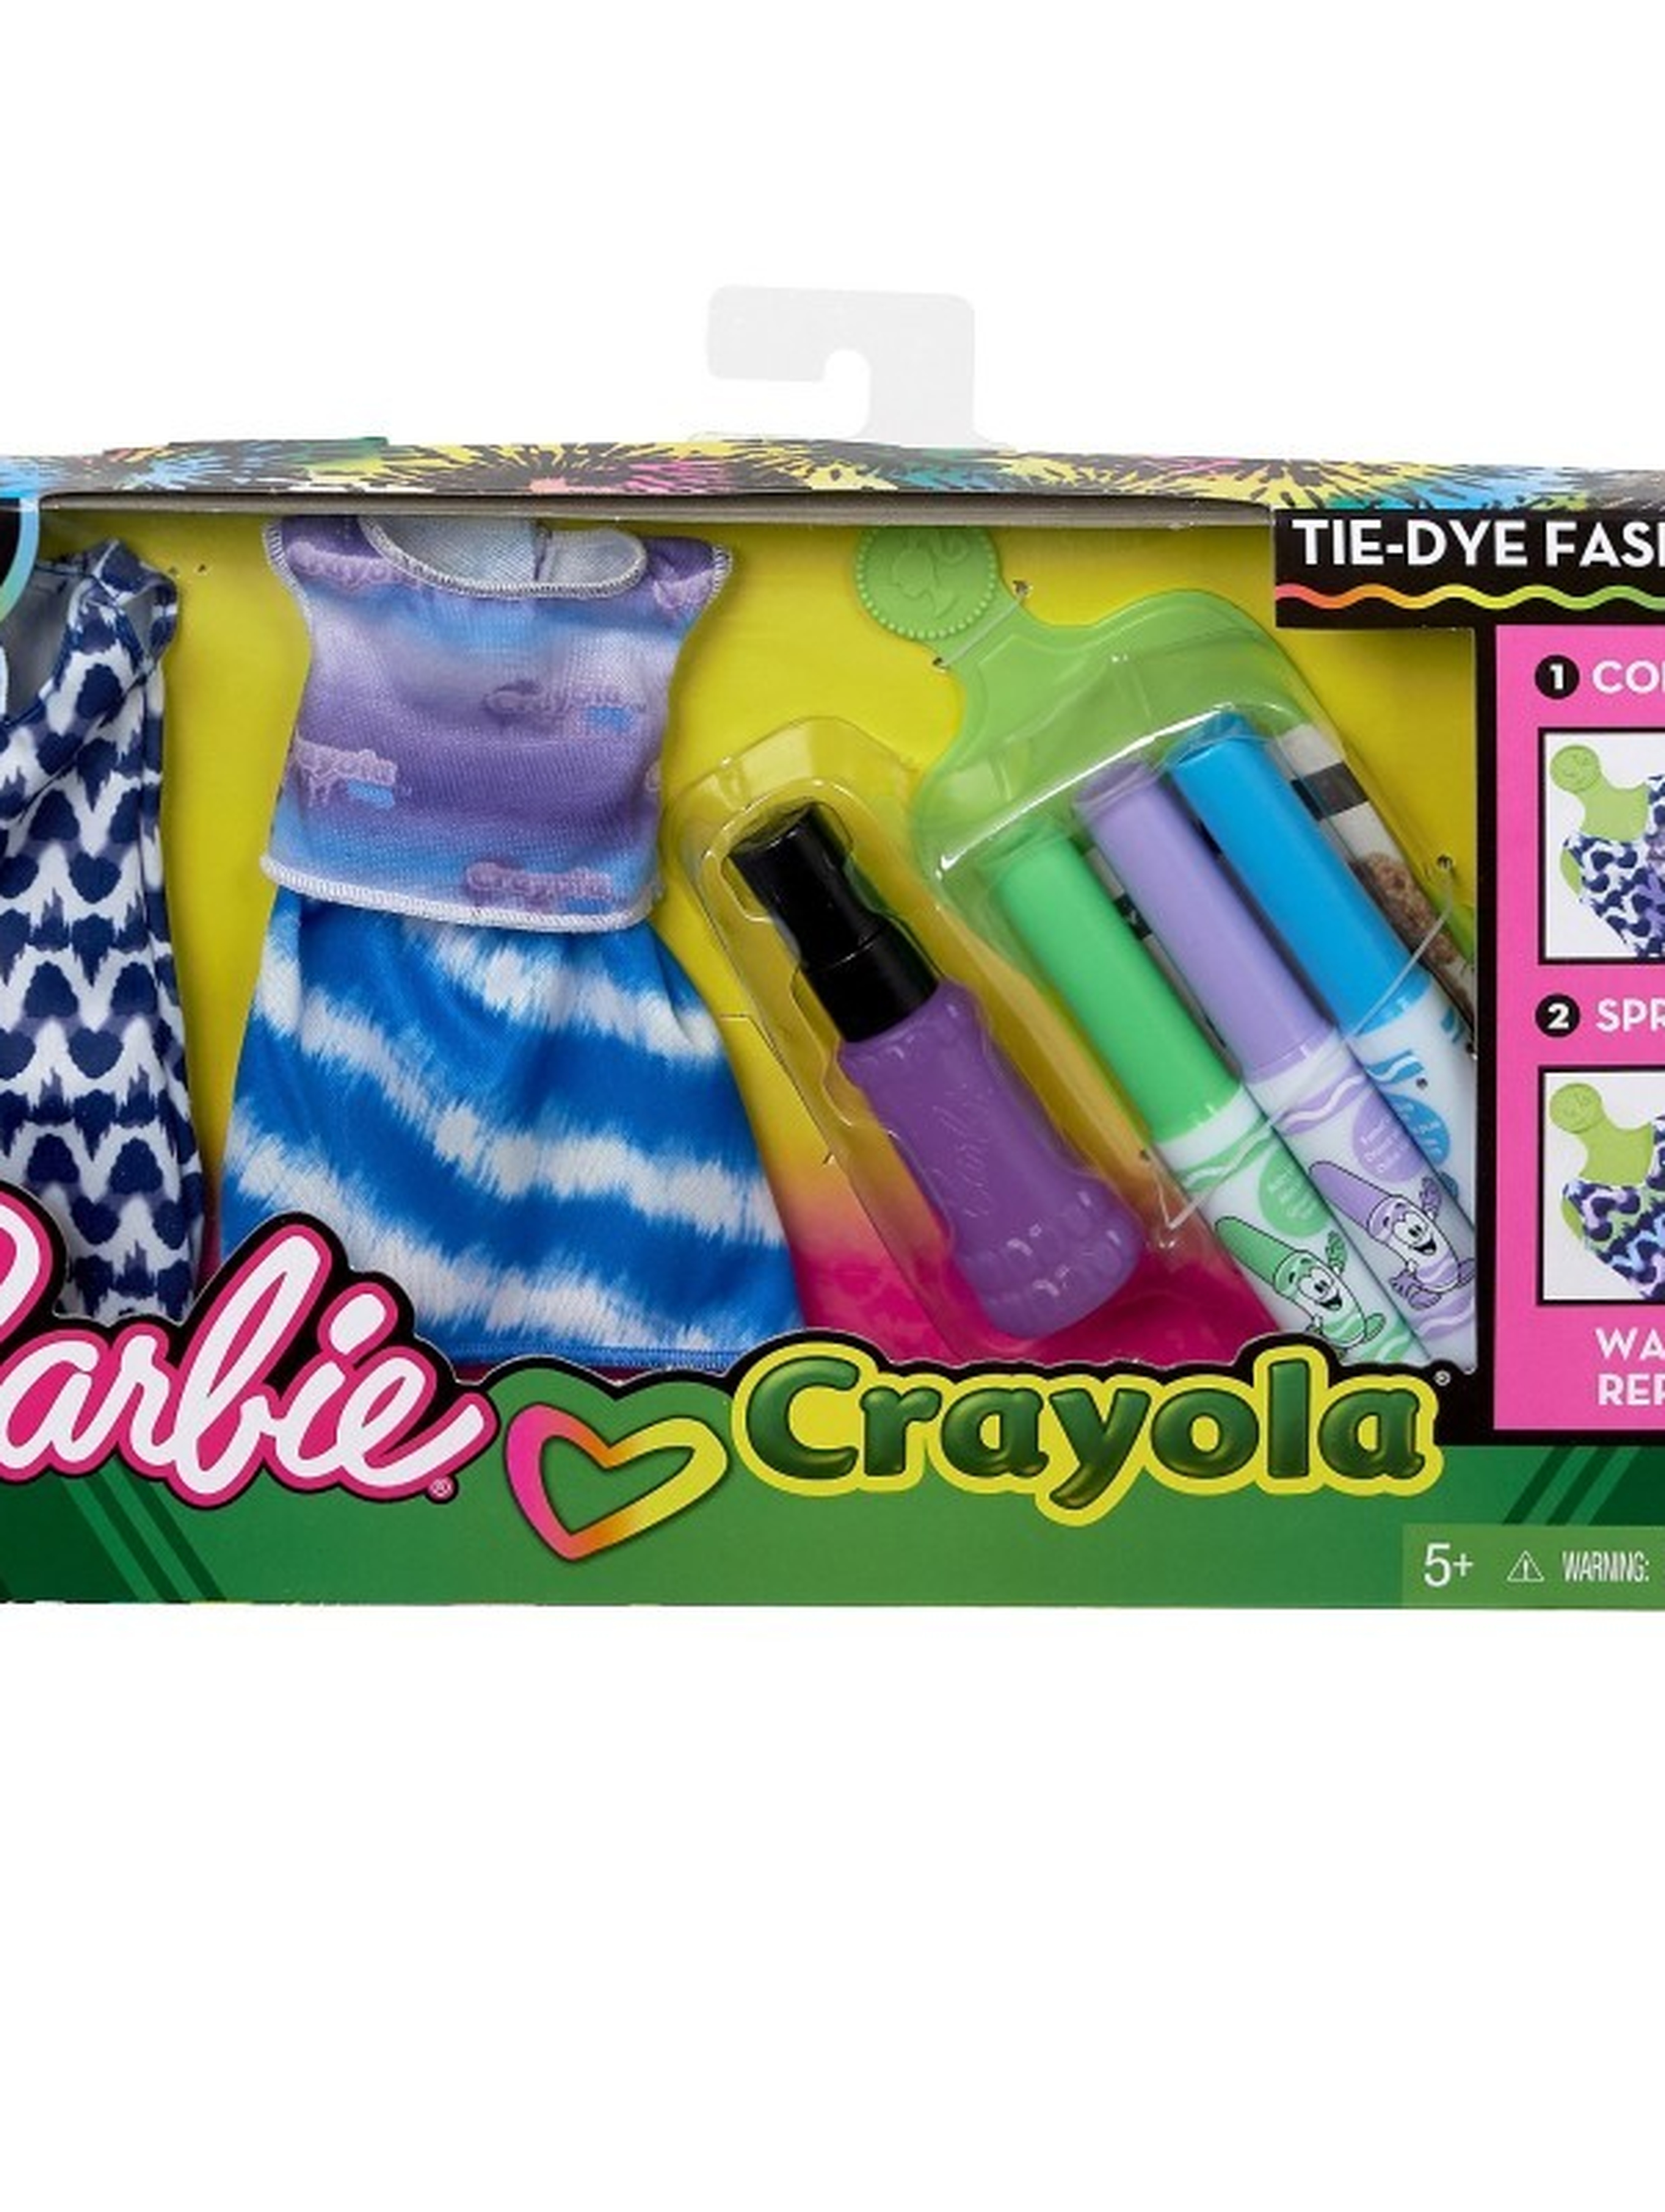 Barbie Crayola zrób to sam FPW14